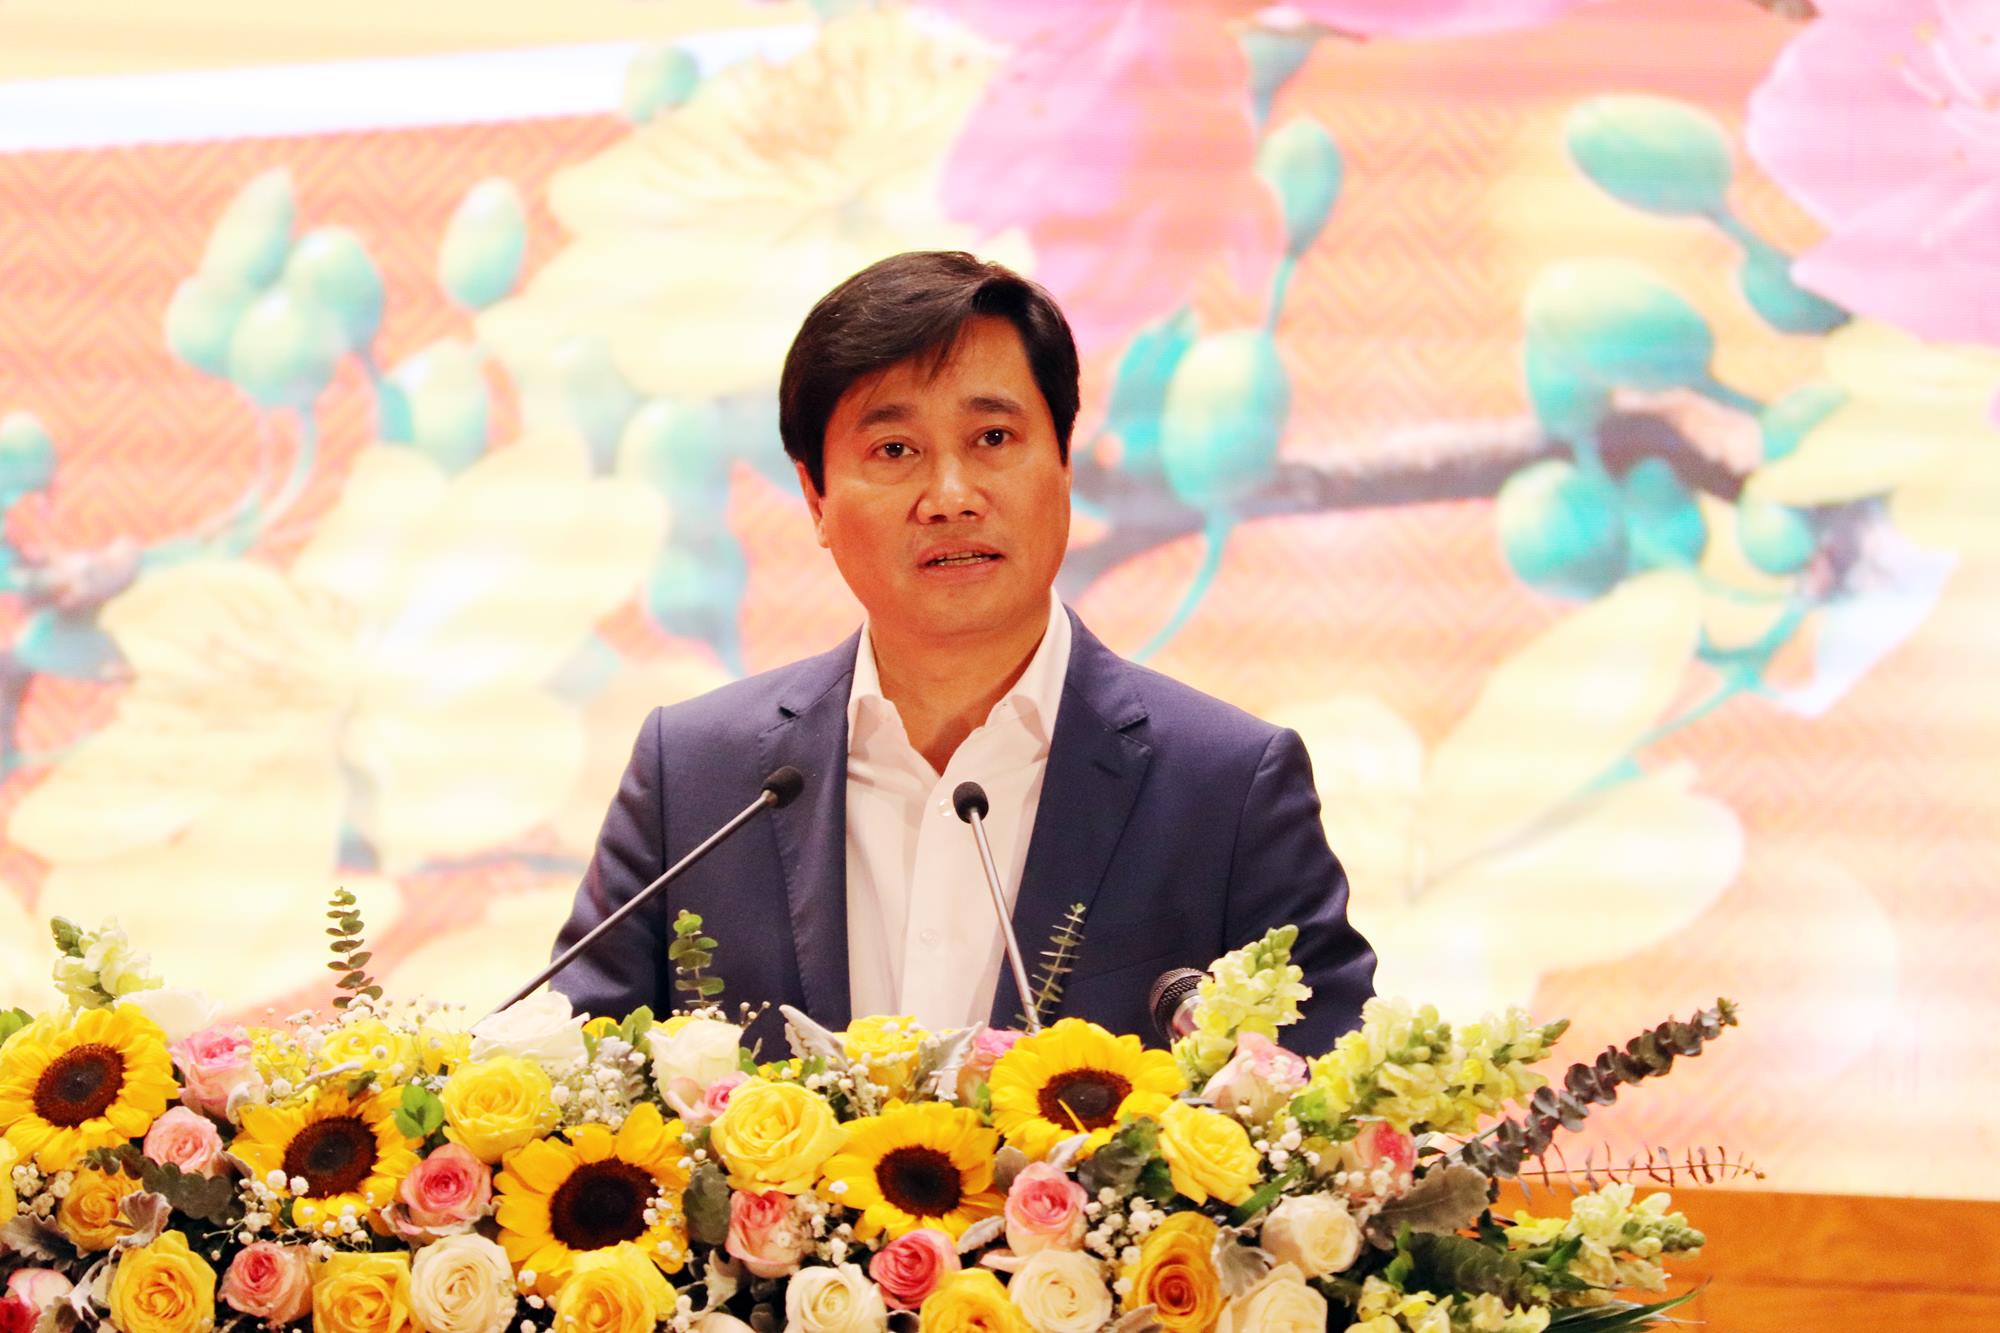 Đồng chí Nguyễn Tường Văn, Phó Bí thư Tỉnh ủy, Chủ tịch UBND tỉnh báo cáo khái quát những nét nổi bật trong phát triển KT-XH của Quảng Ninh.